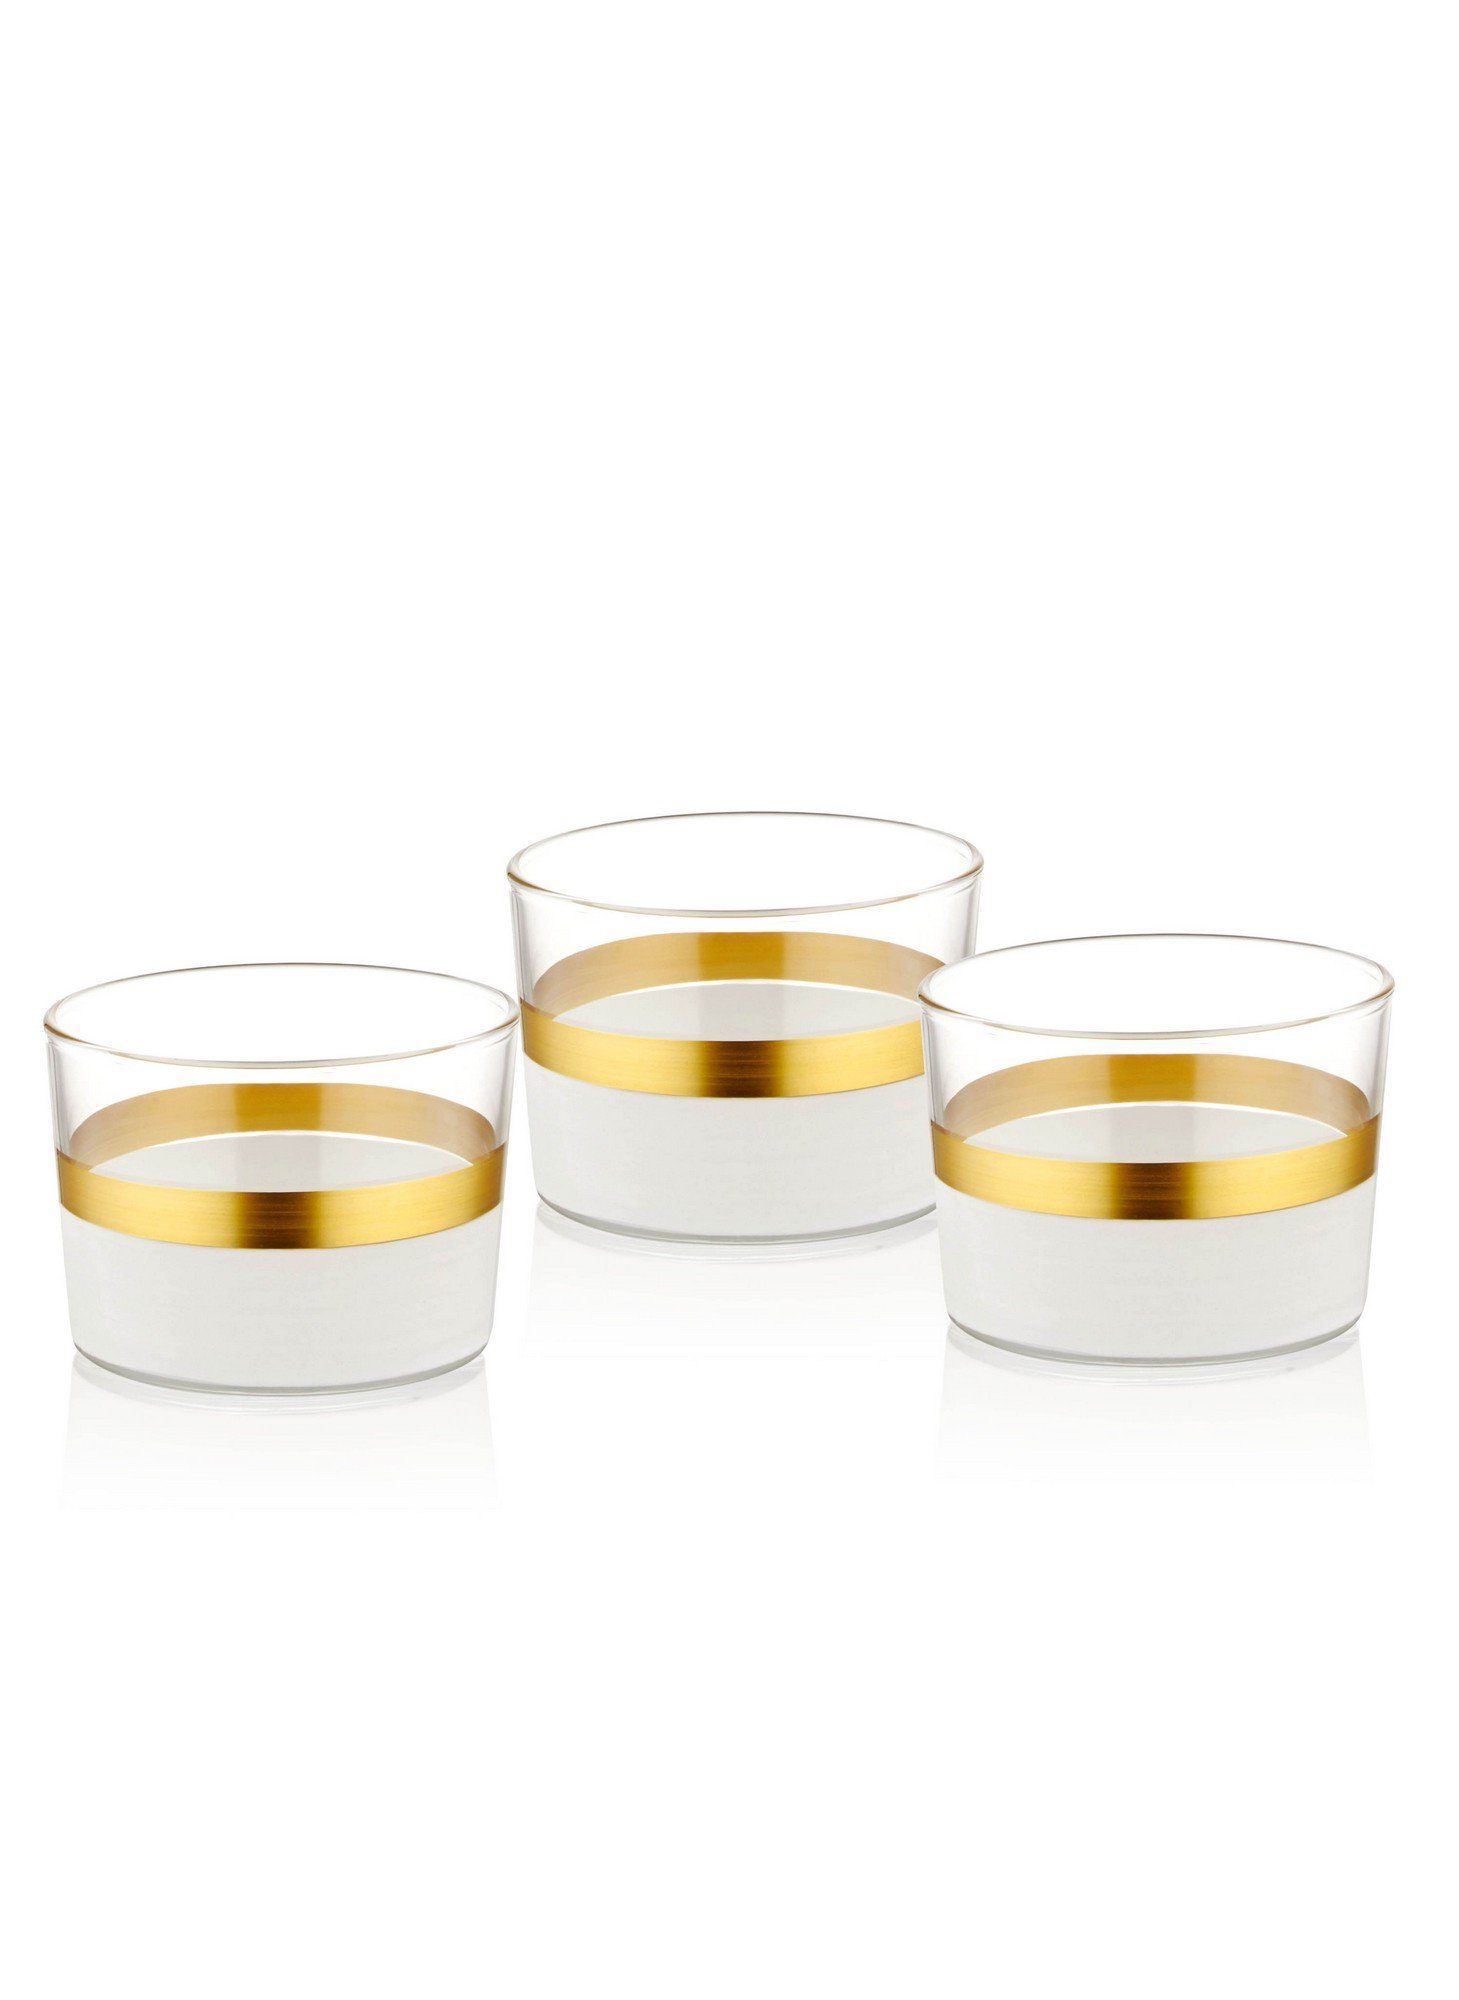 Glas TMA4765, Weiß,Gold, Schüssel Schüsseln, Hermia Concept 100%